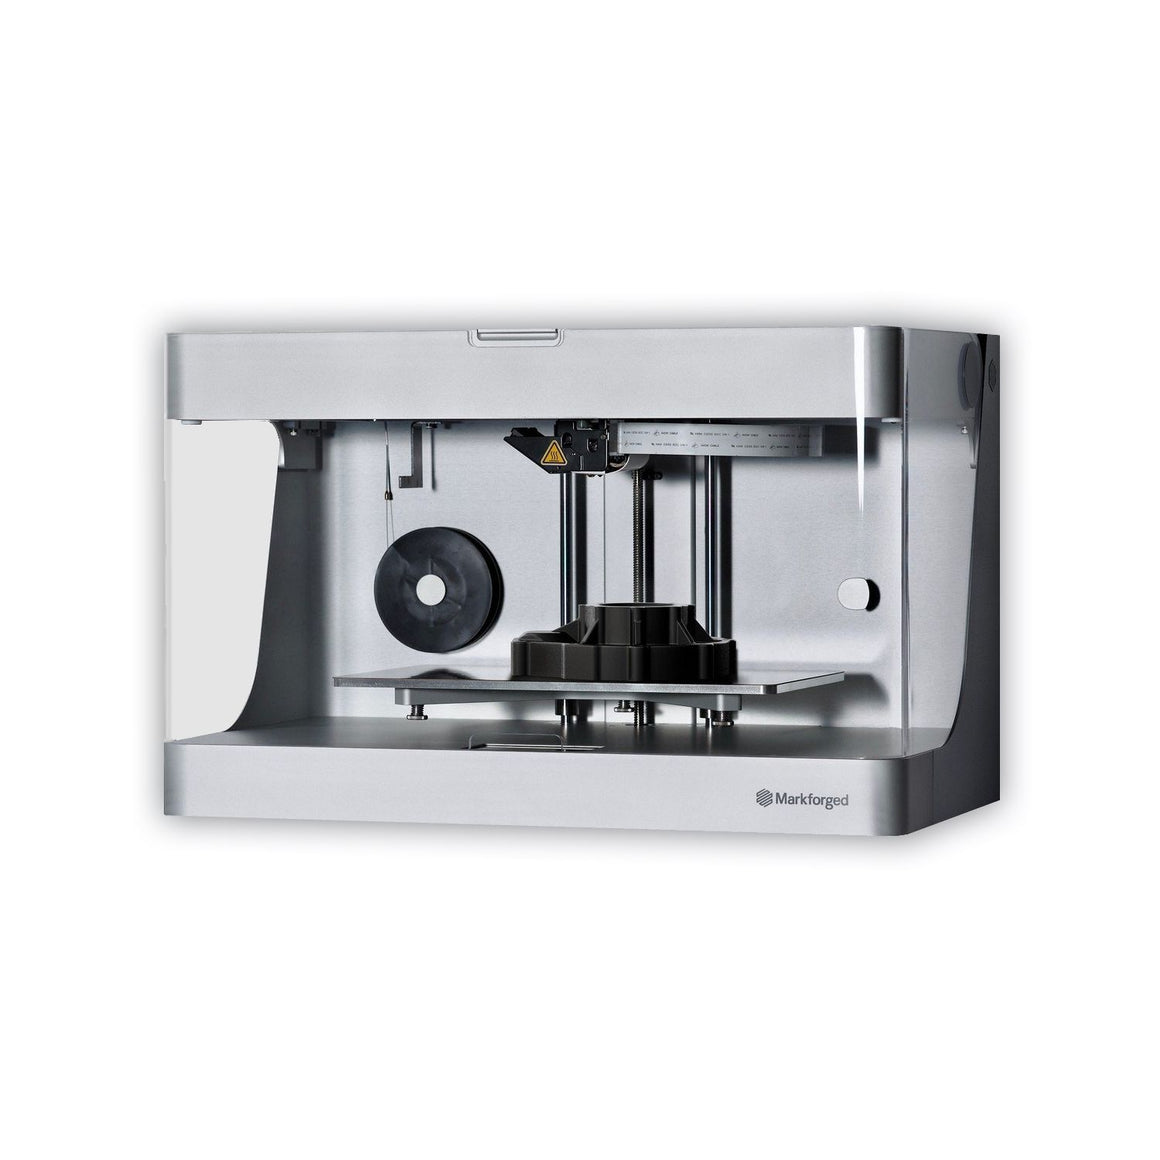 Impresora 3D para fibra de carbono Mark Two